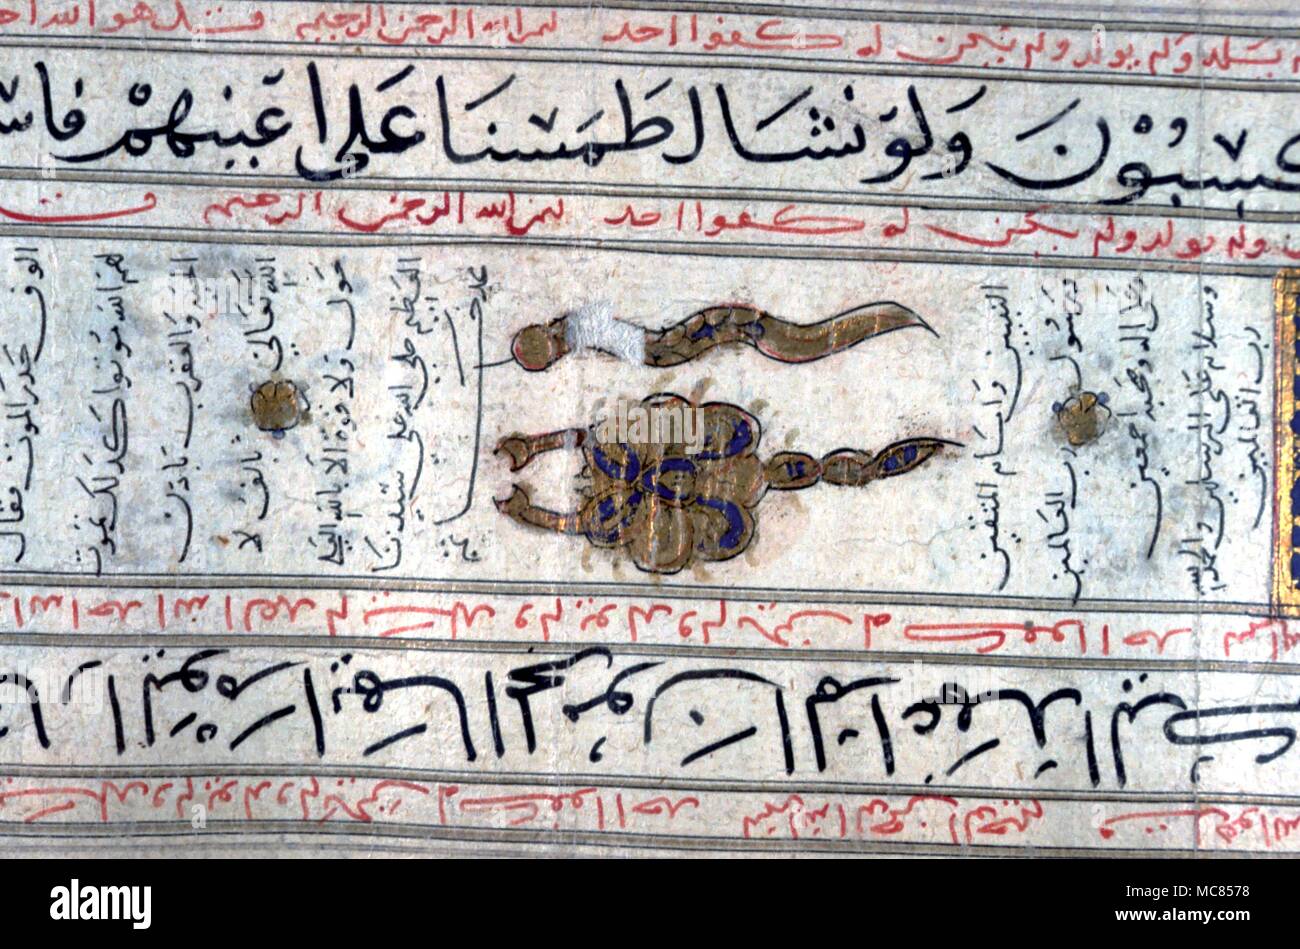 Amuleti magico simbolo su un Arabo scorrere che è una ricetta utilizzata come un erogatore di magici amuleti e amuleti contro il male. Egiziano del XIV secolo. Dar al Athar al Islamiyyah, Kuwait Foto Stock